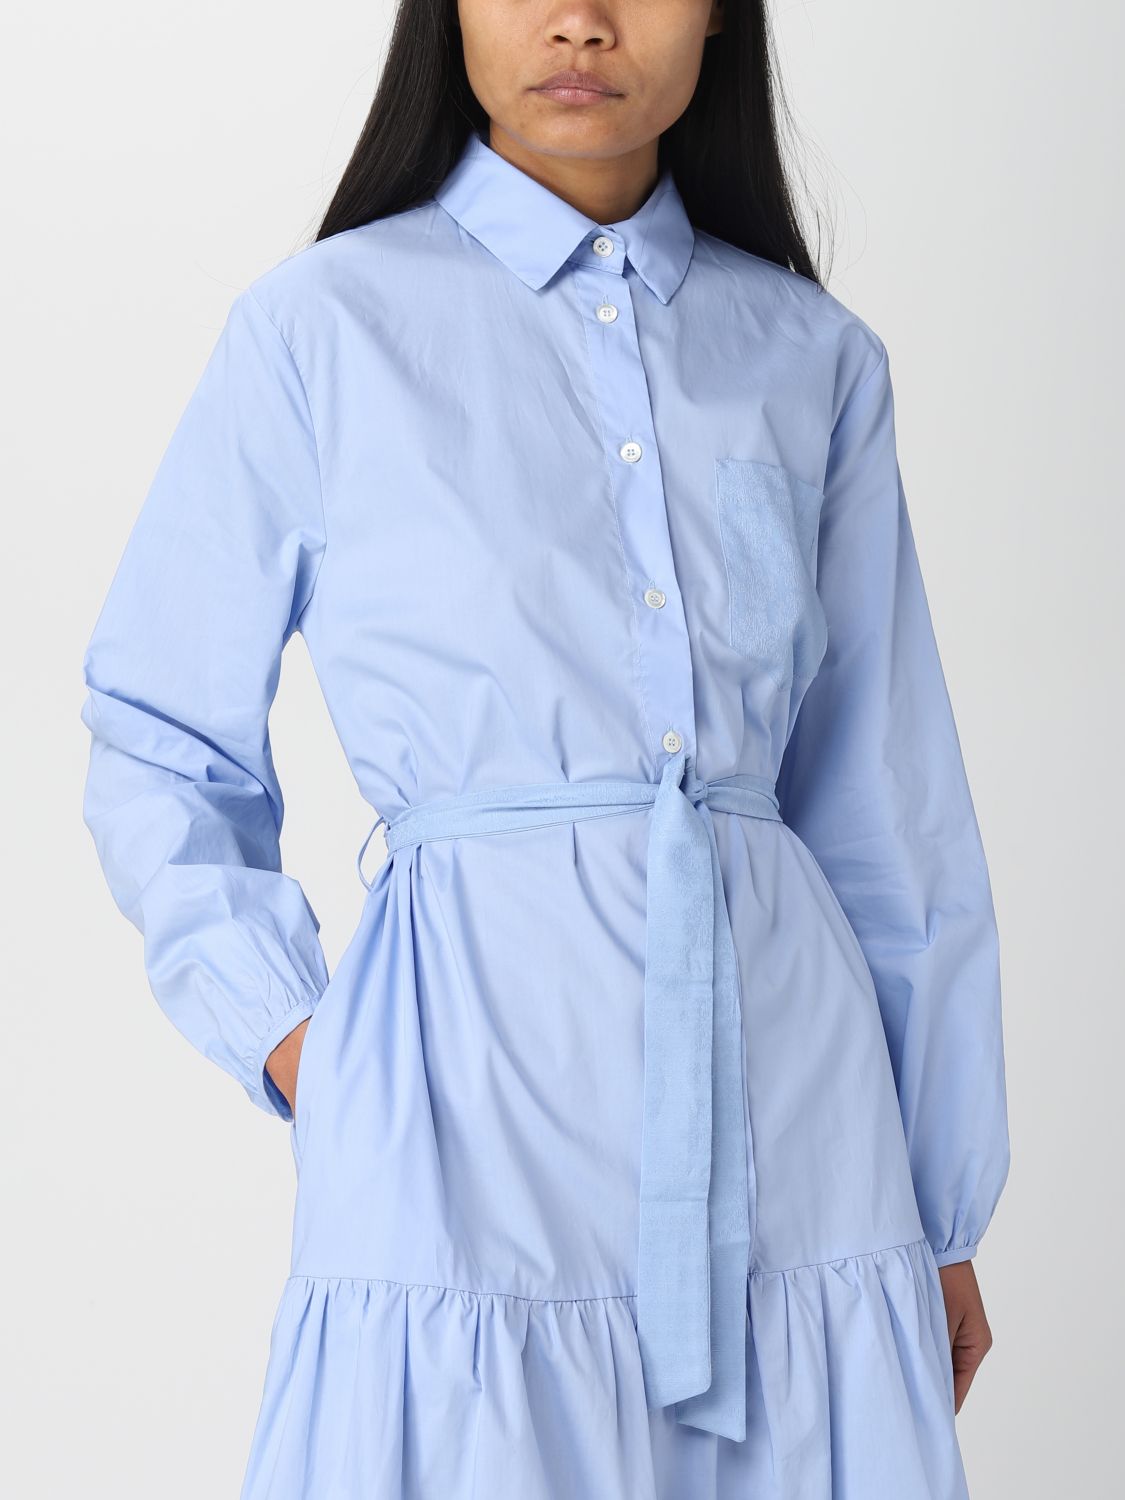 Vestido Semicouture: Vestido Semicouture para mujer azul claro 3